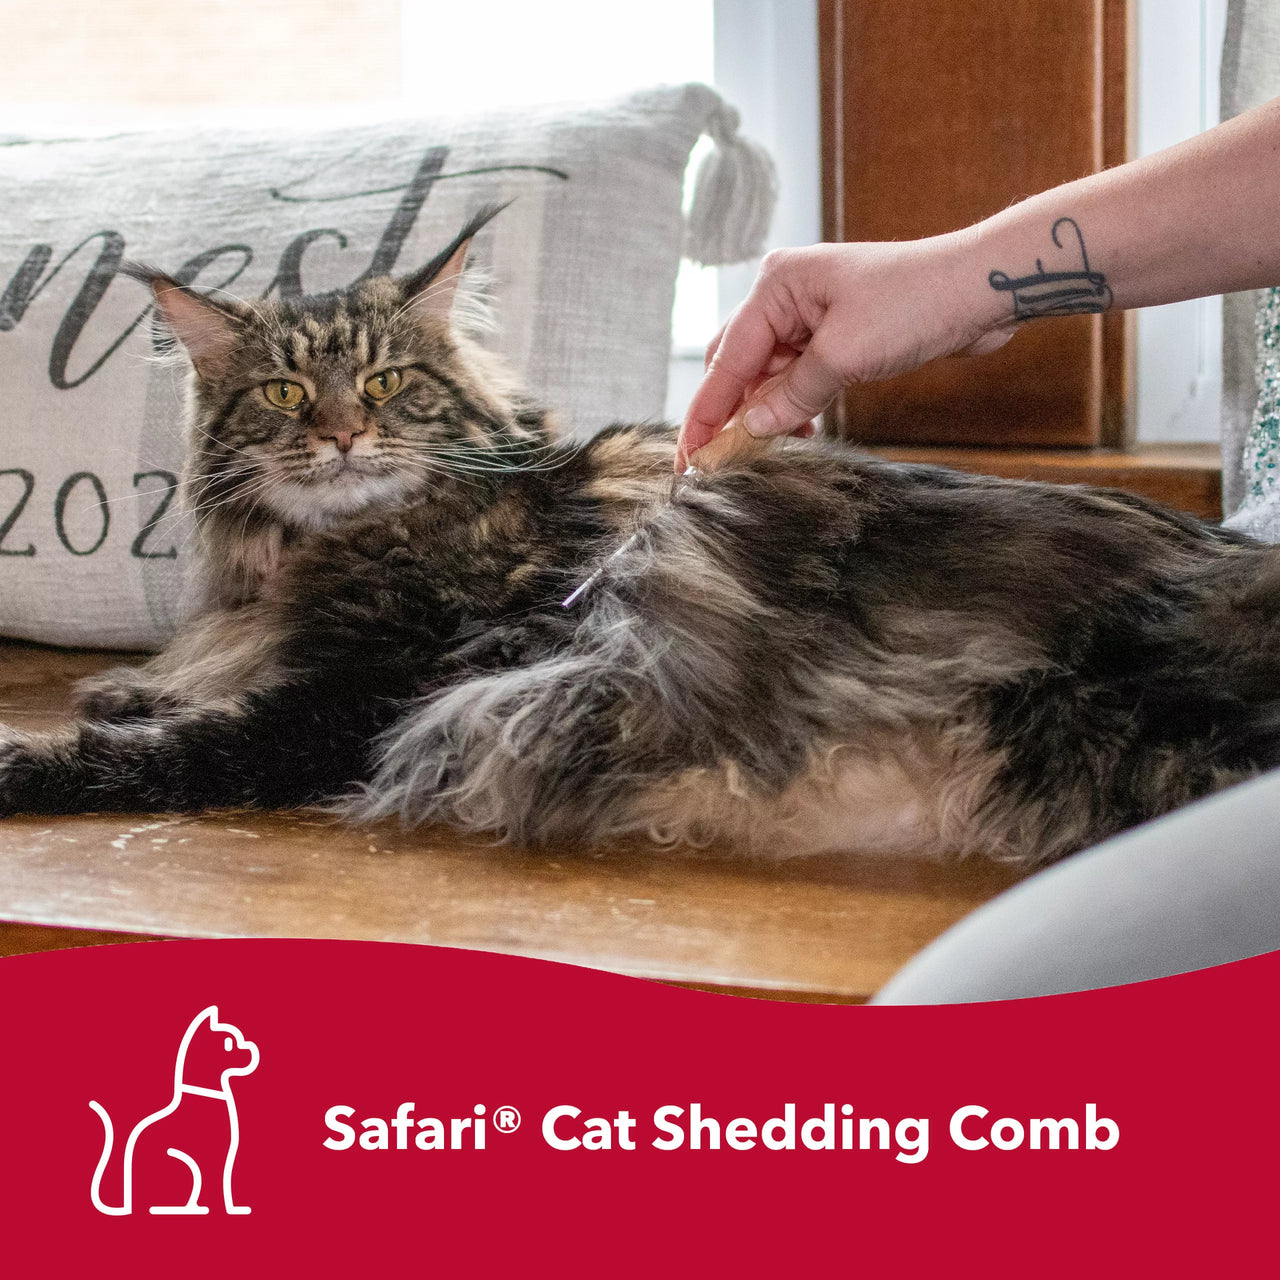 Safari® Cat Shedding Comb